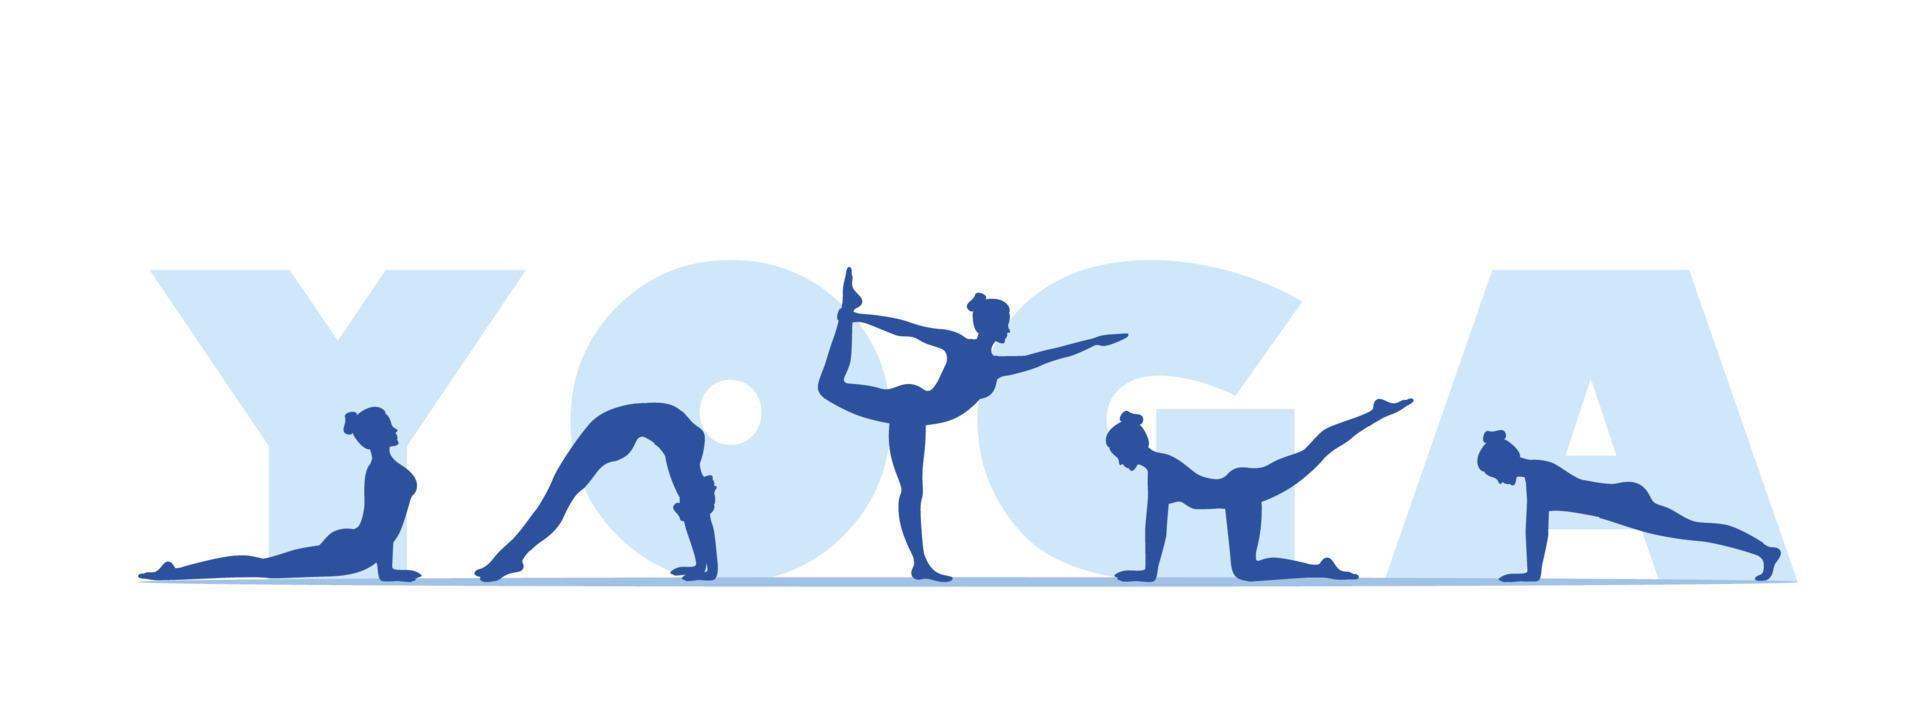 dia internacional da ioga. postura corporal de ioga. poses de ioga. treinamento de bem-estar em ilustração vetorial plana. vetor